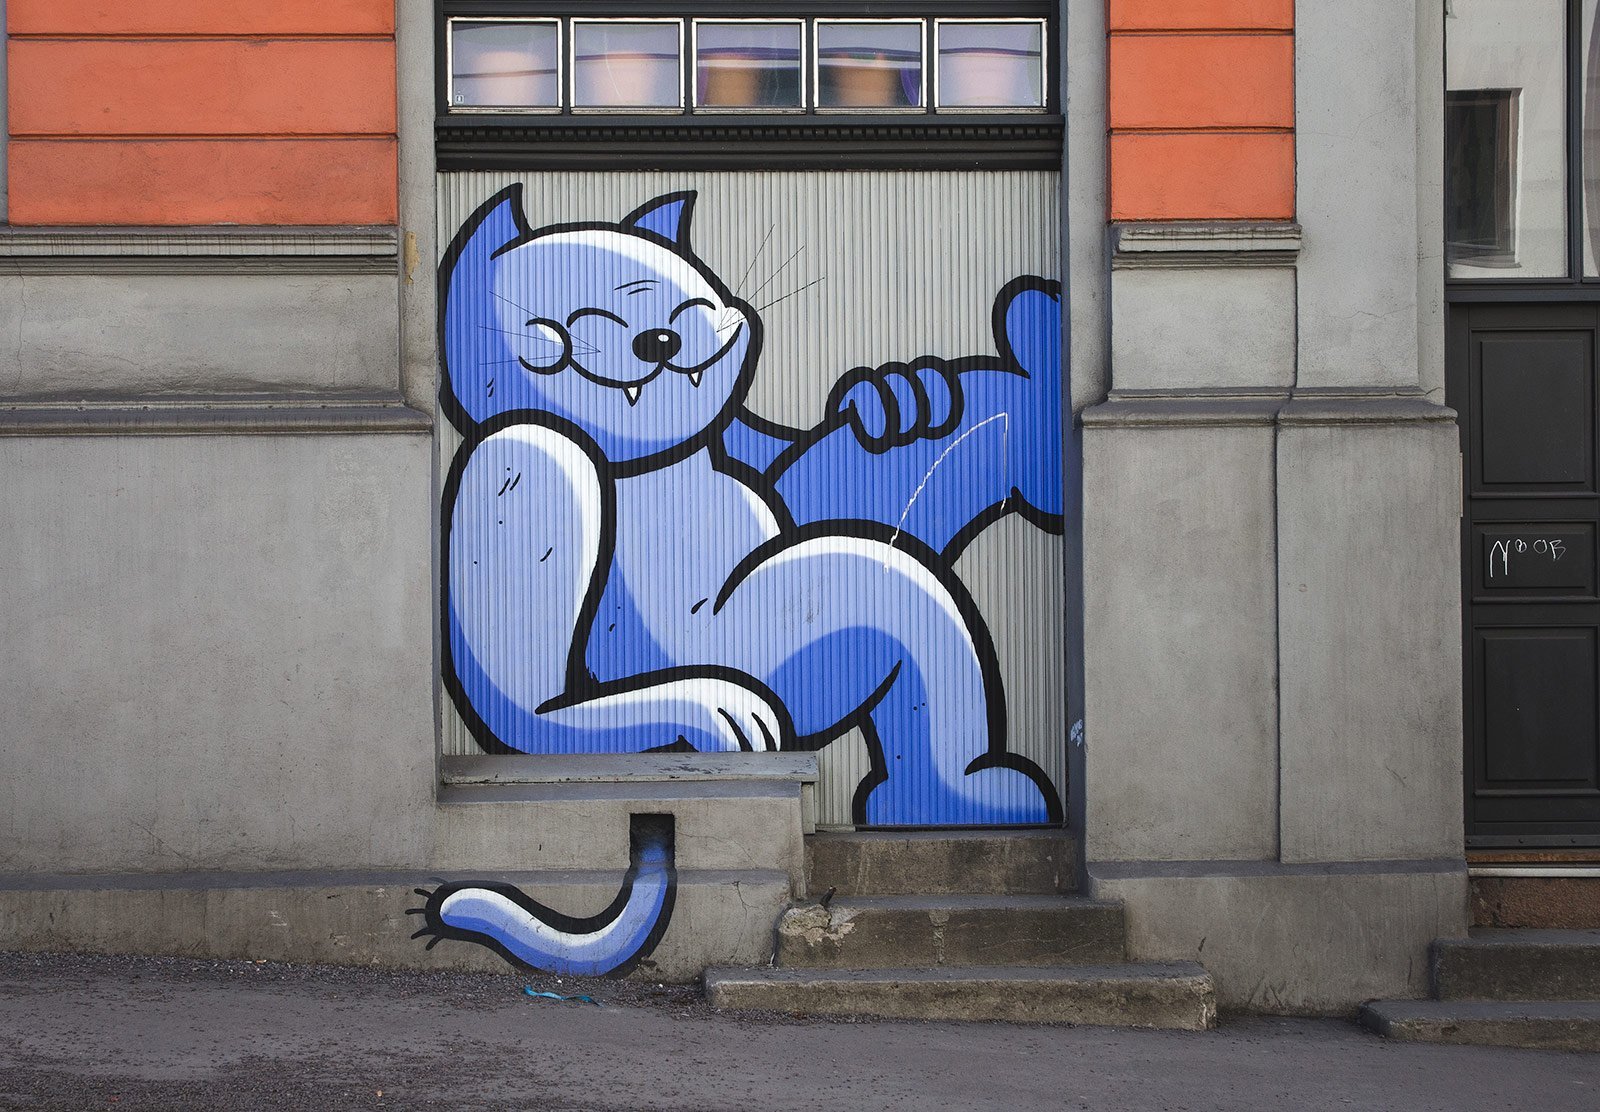 Граффити на стене кот